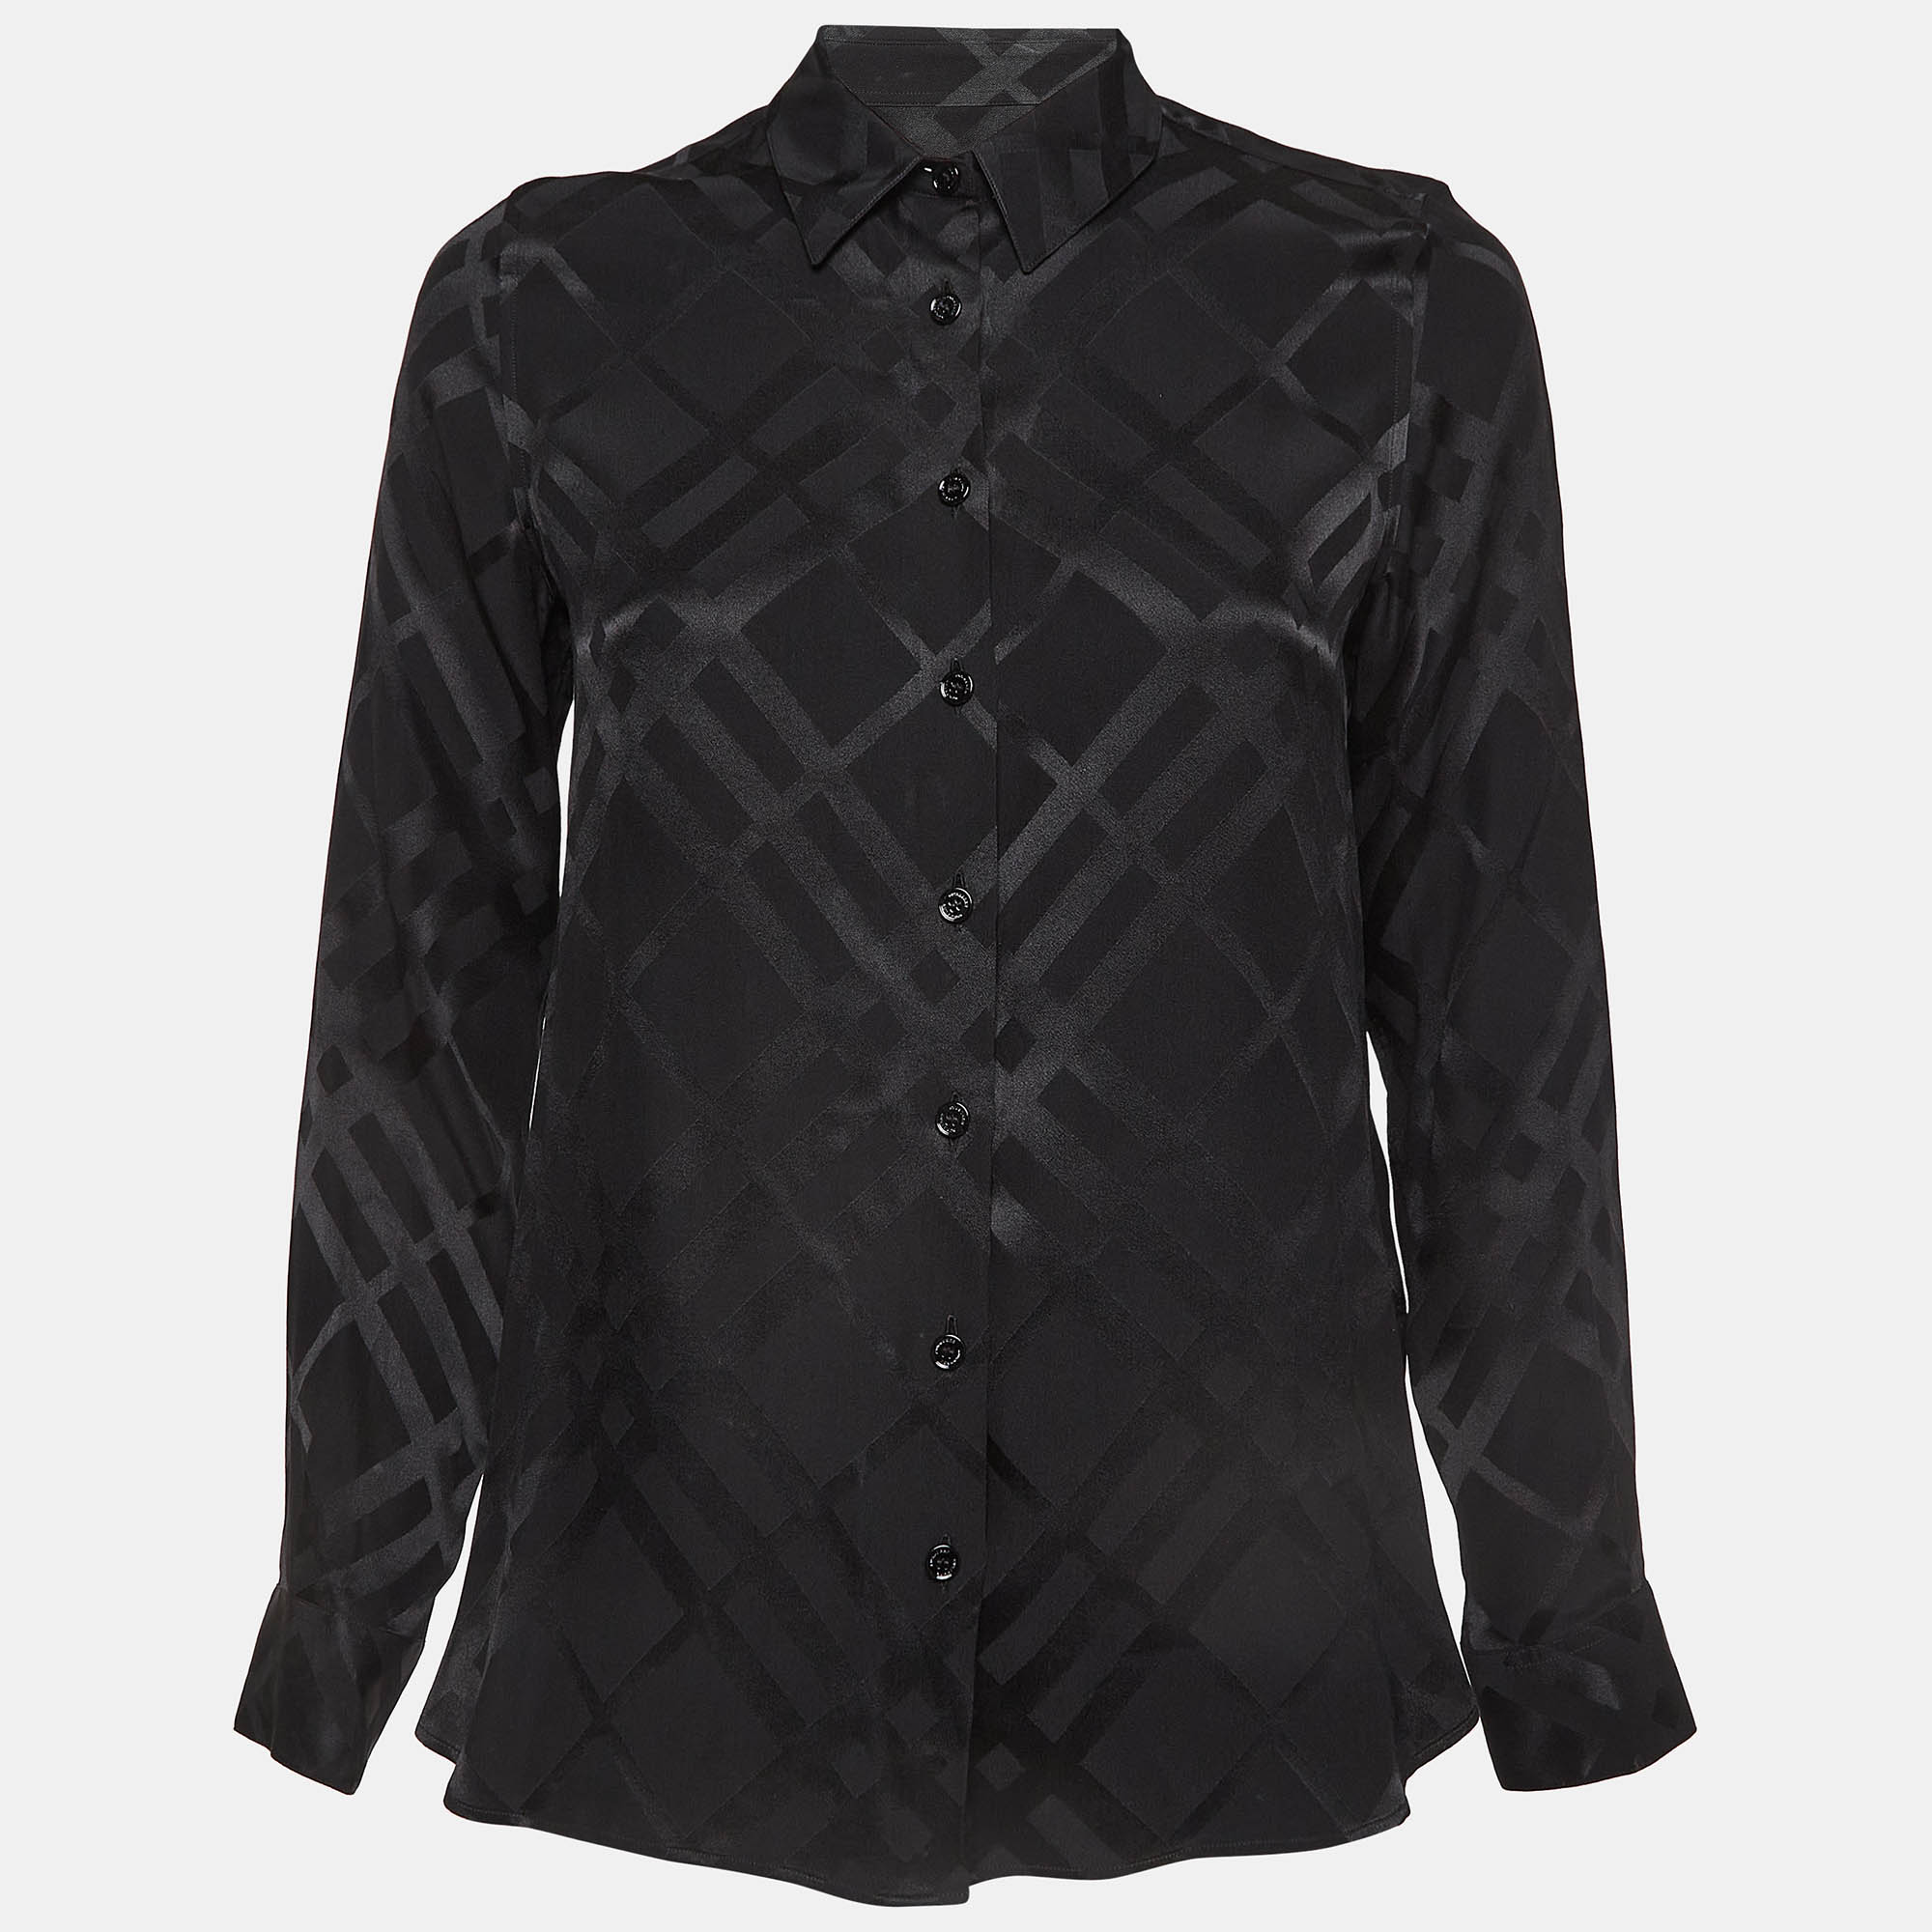 Burberry black check pattern silk shirt s